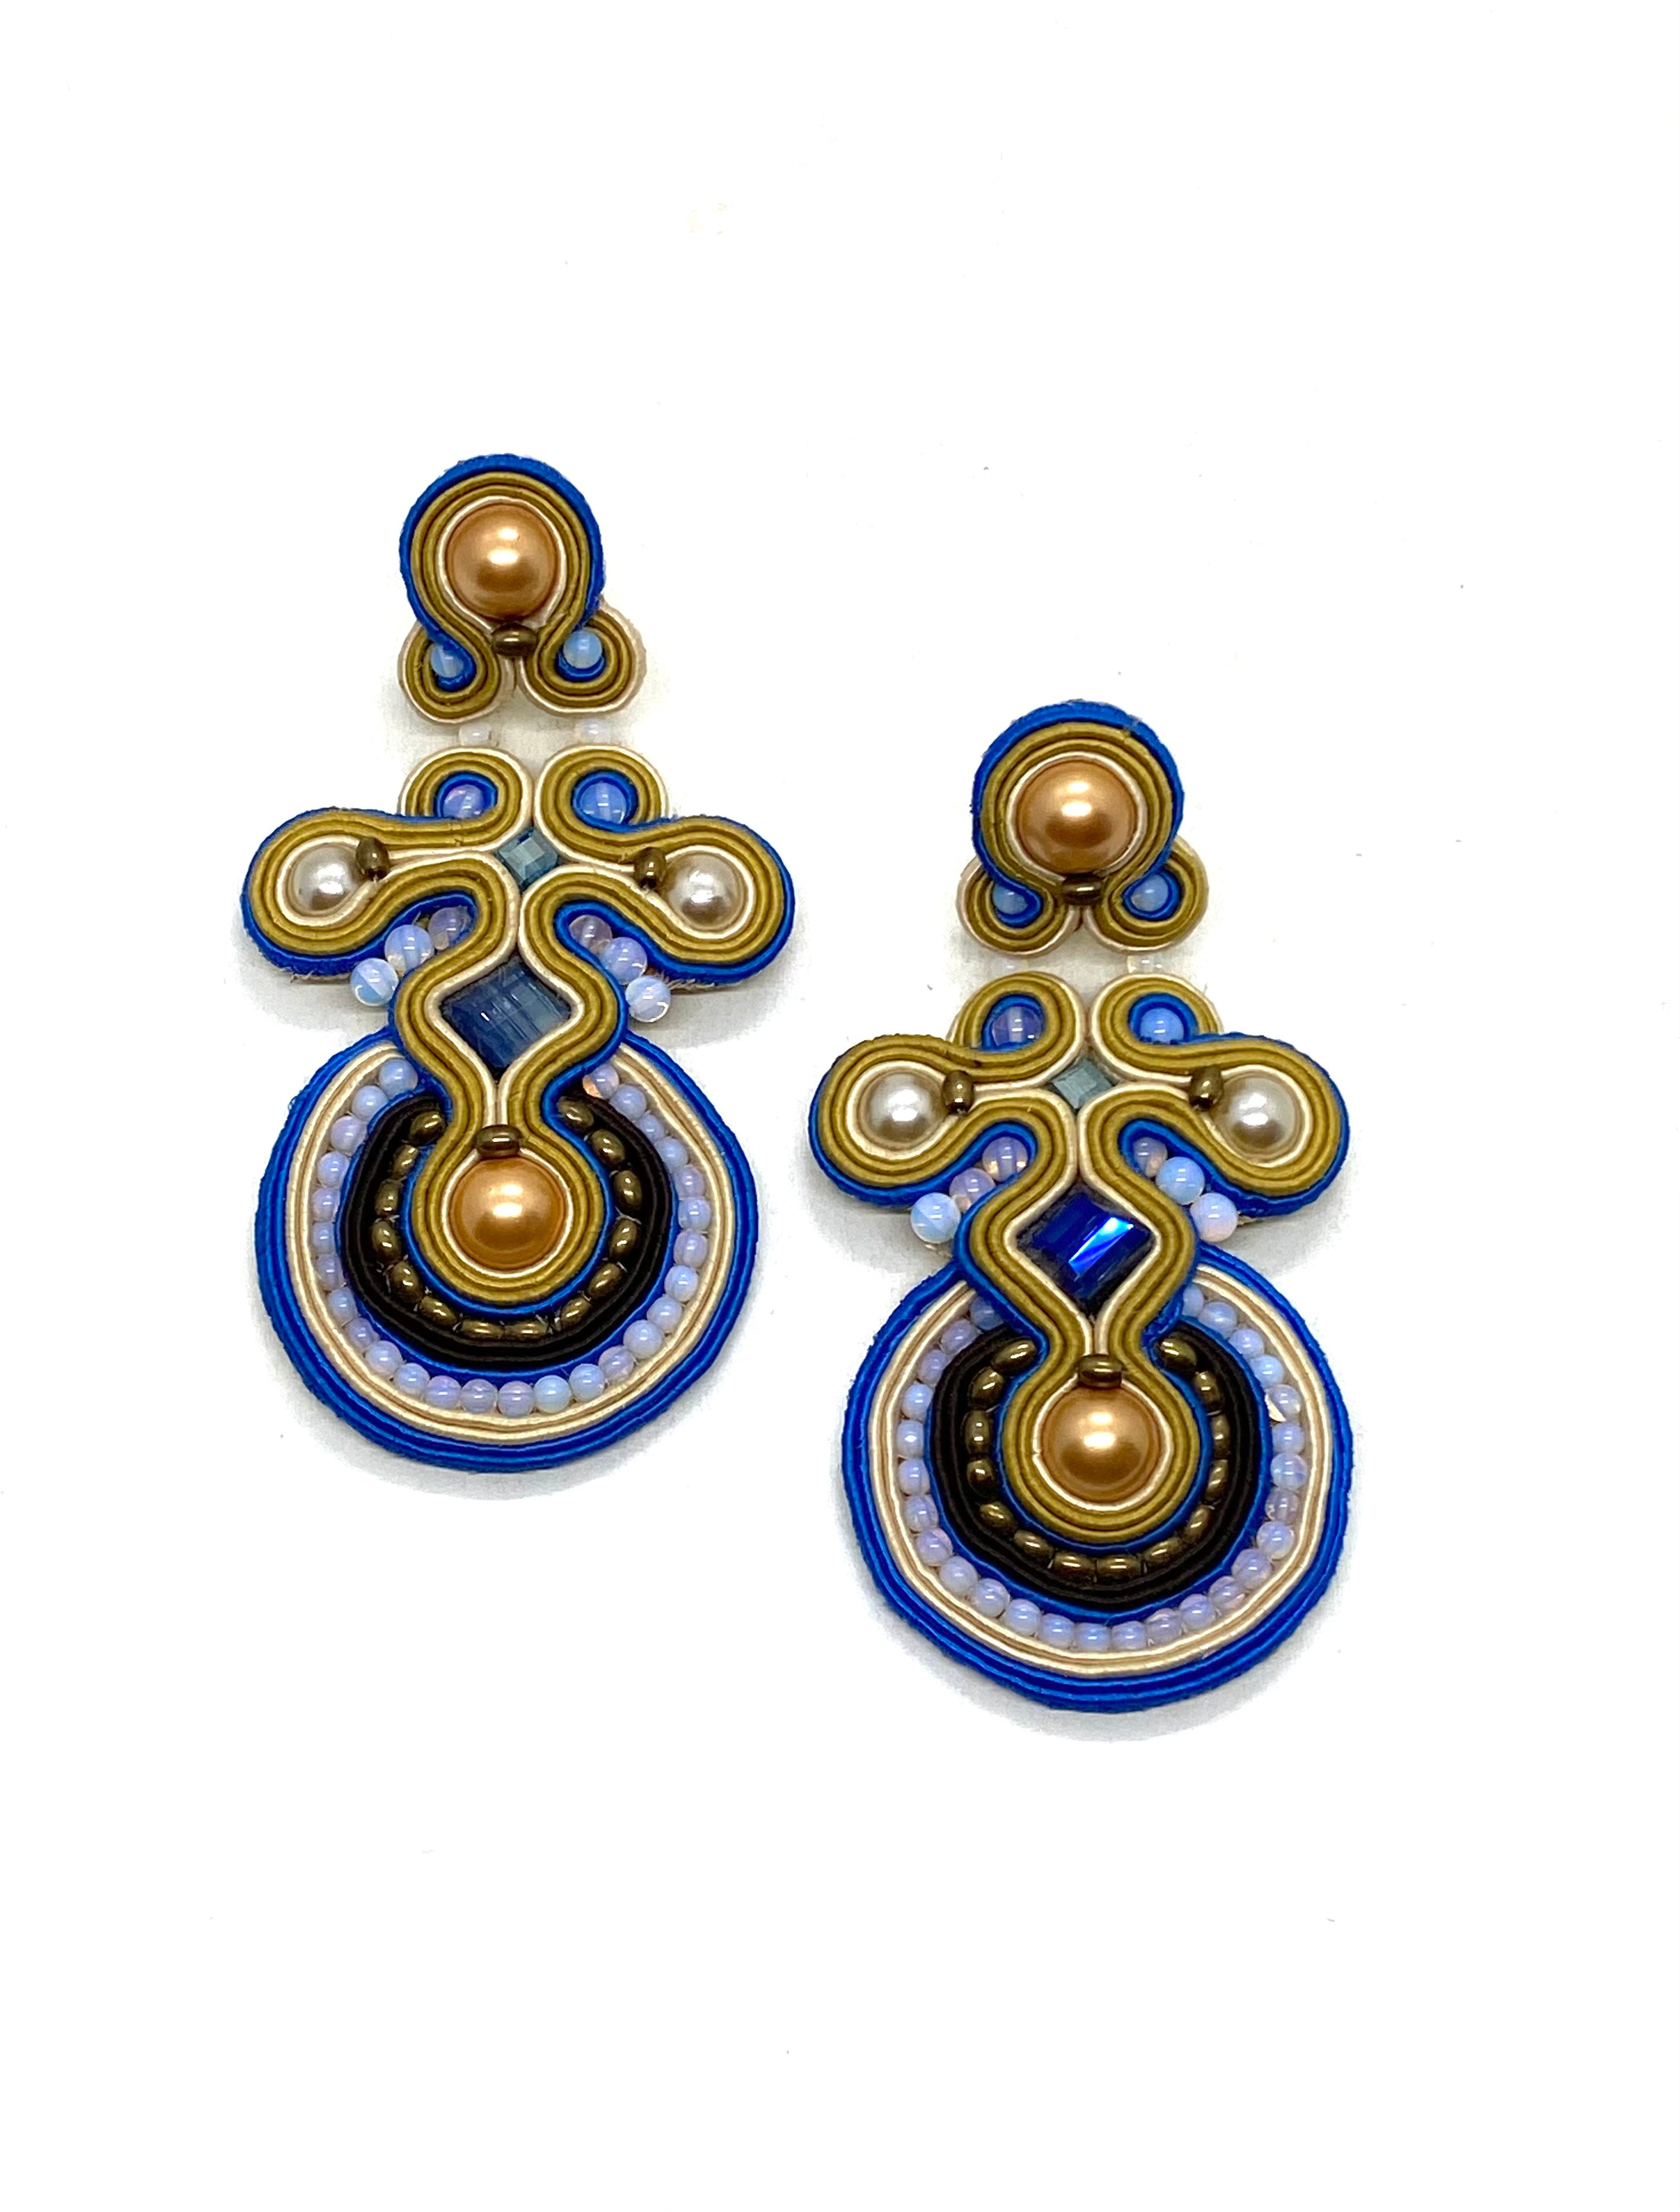 Byzantine Cross earrings